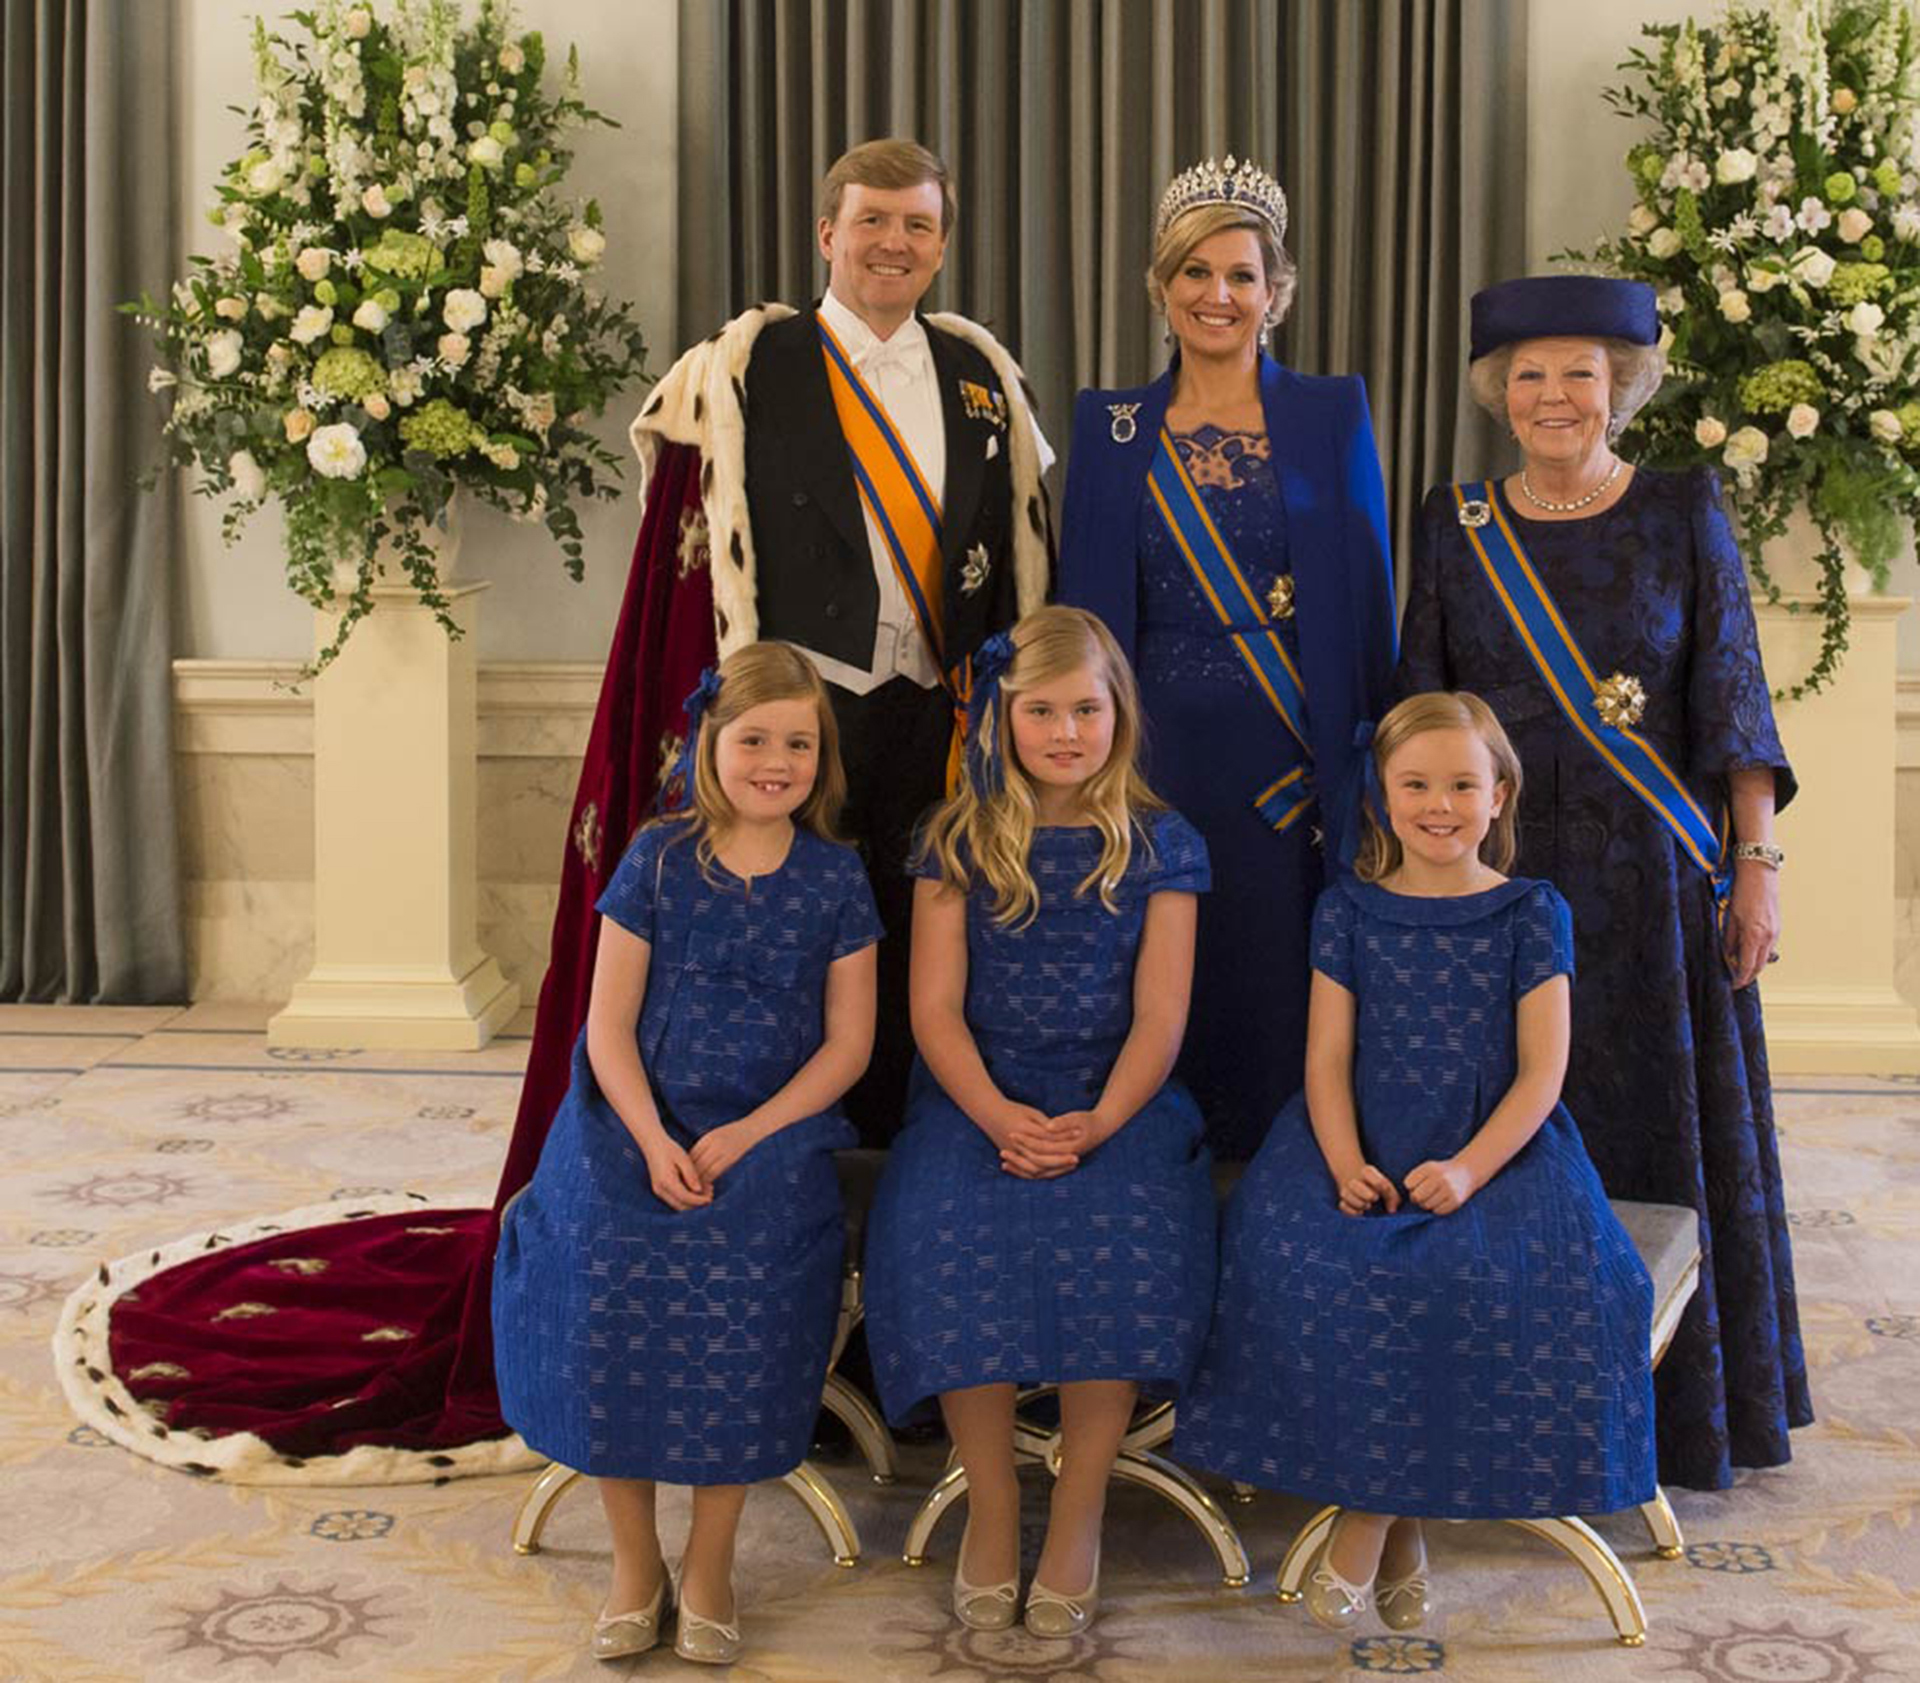 Tanto la reina Máxima como sus tres hijas lucieron unos delicados vestidos azules diseñados por el holandés Jan Taminiau, quien también es el favorito de Matilde de Bélgica